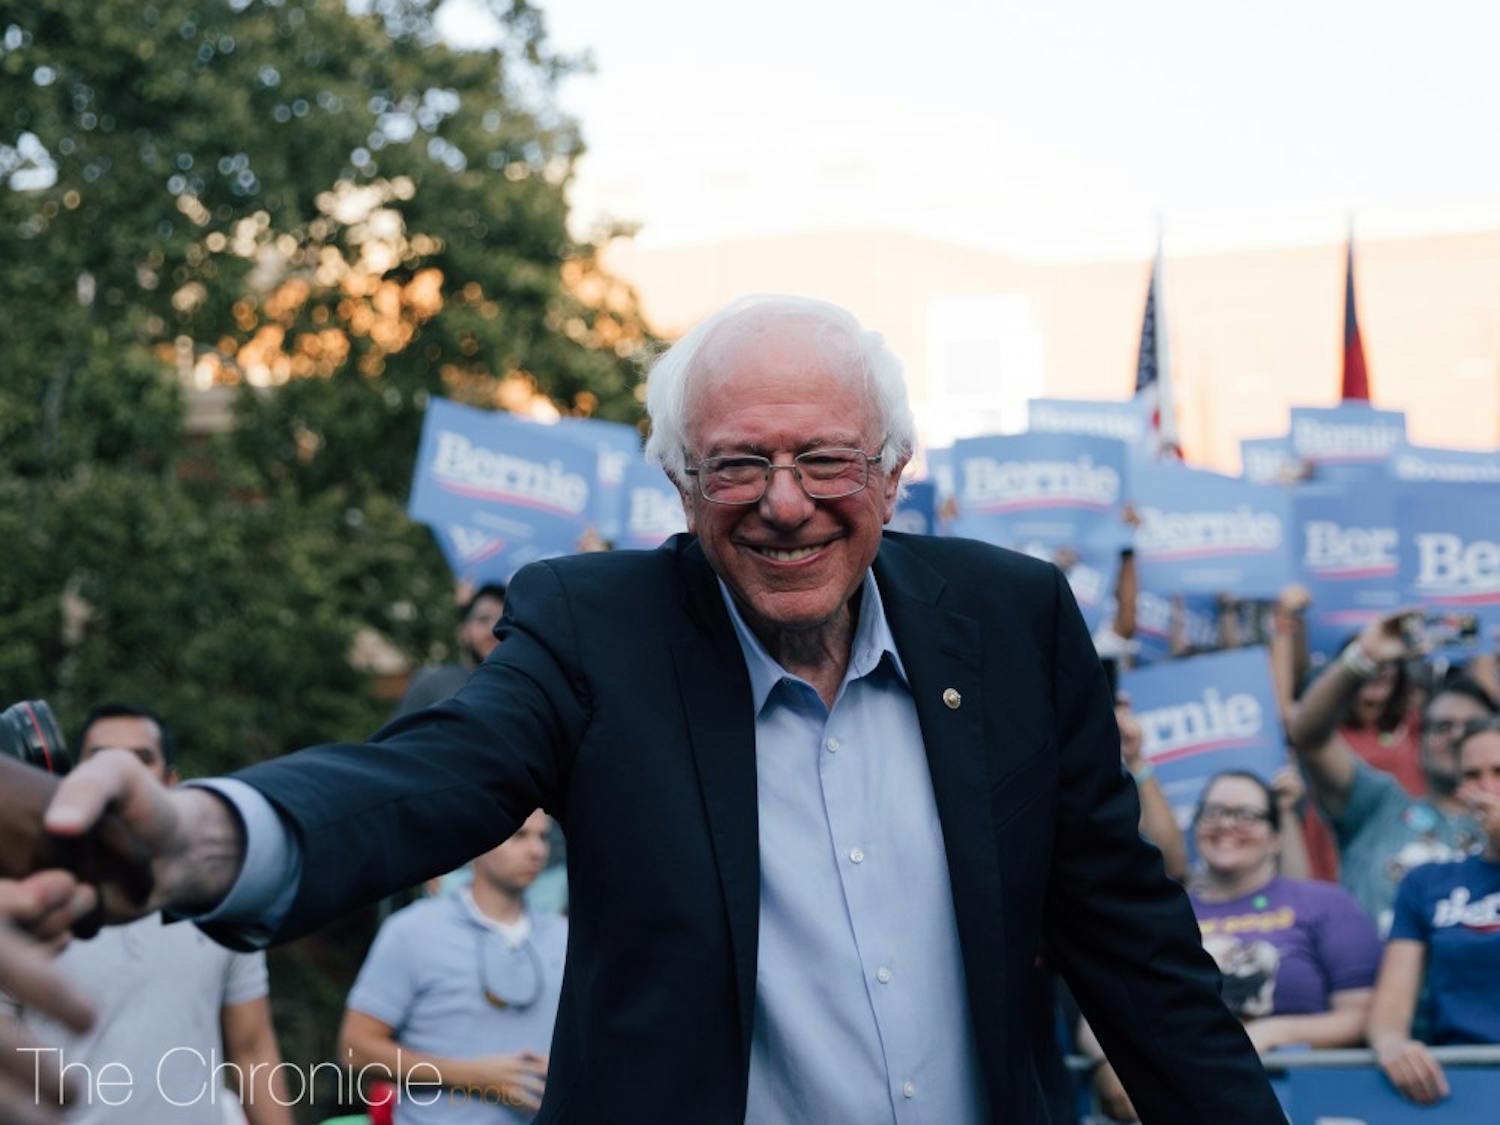 Bernie Sanders' 2020 Rally at UNC